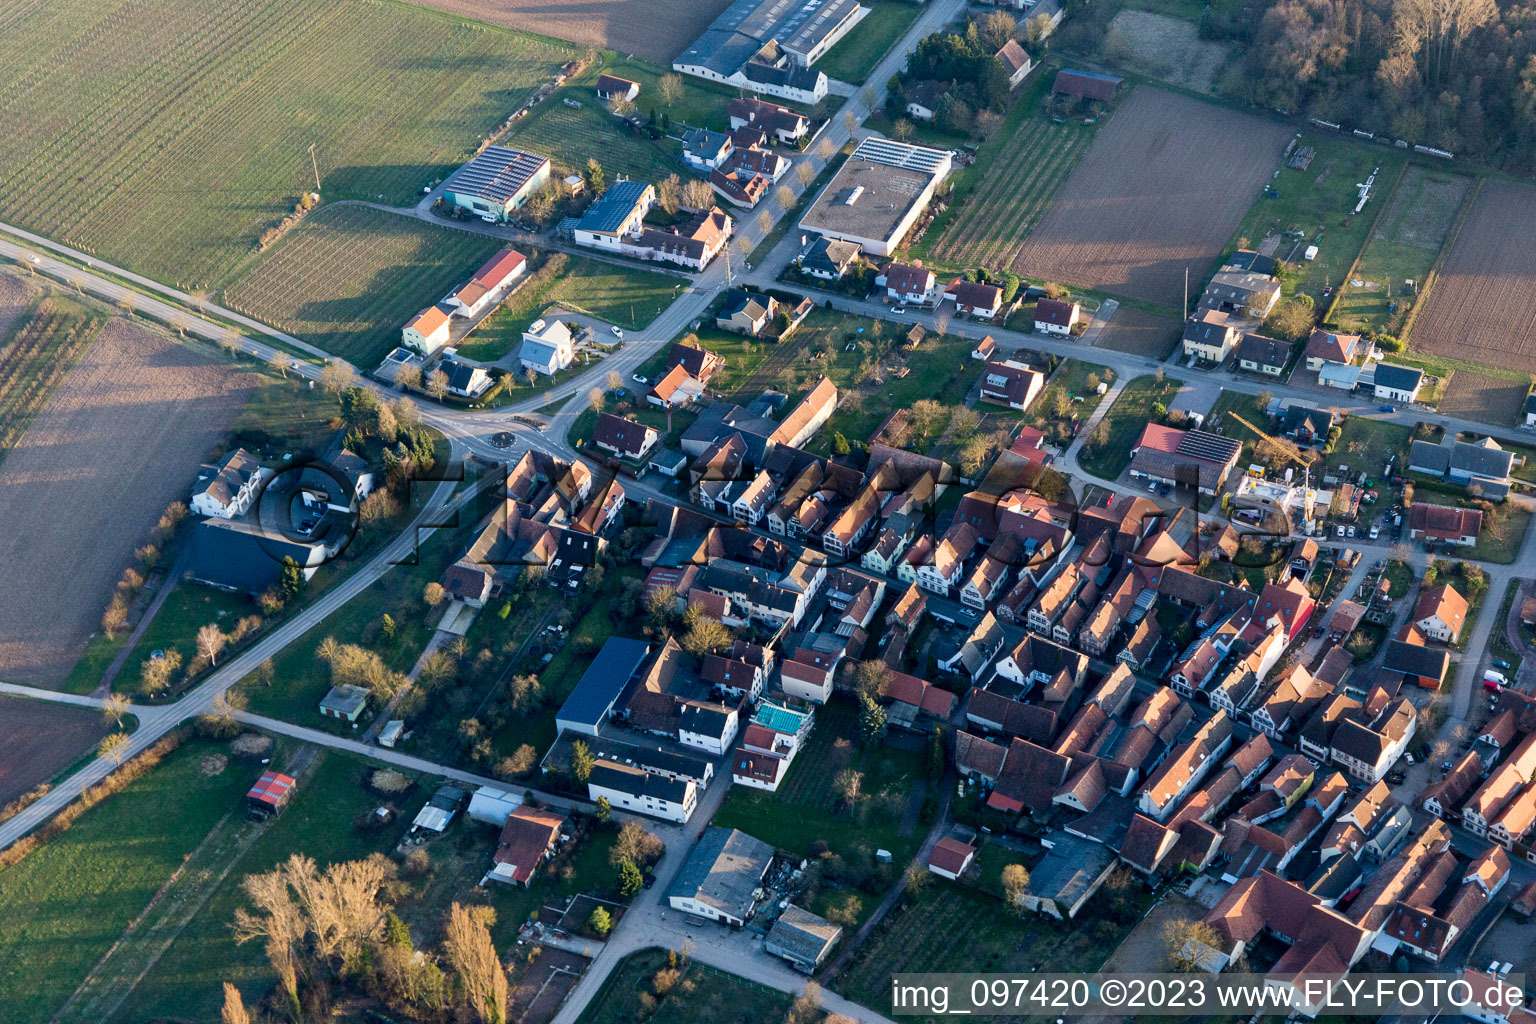 District Heuchelheim in Heuchelheim-Klingen in the state Rhineland-Palatinate, Germany out of the air